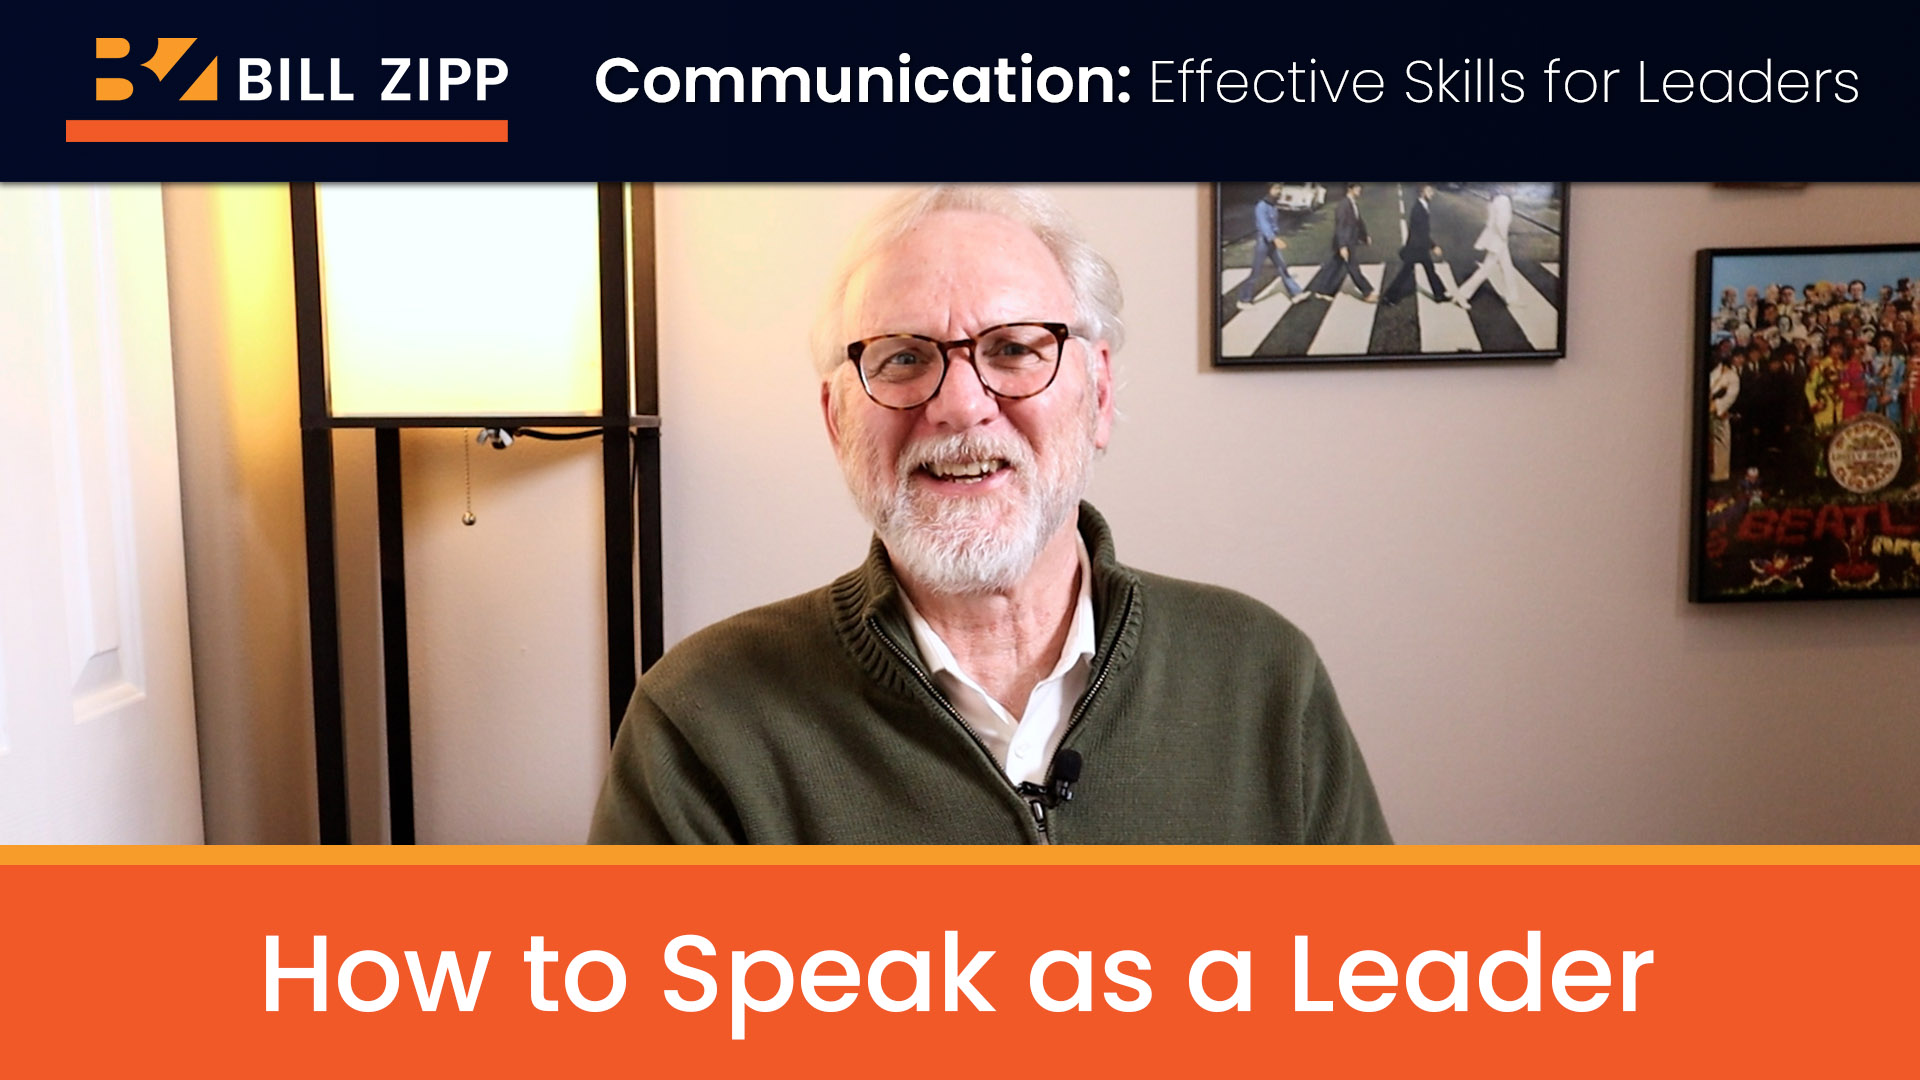 How to Speak as a Leader: Simple Public Speaking Skills